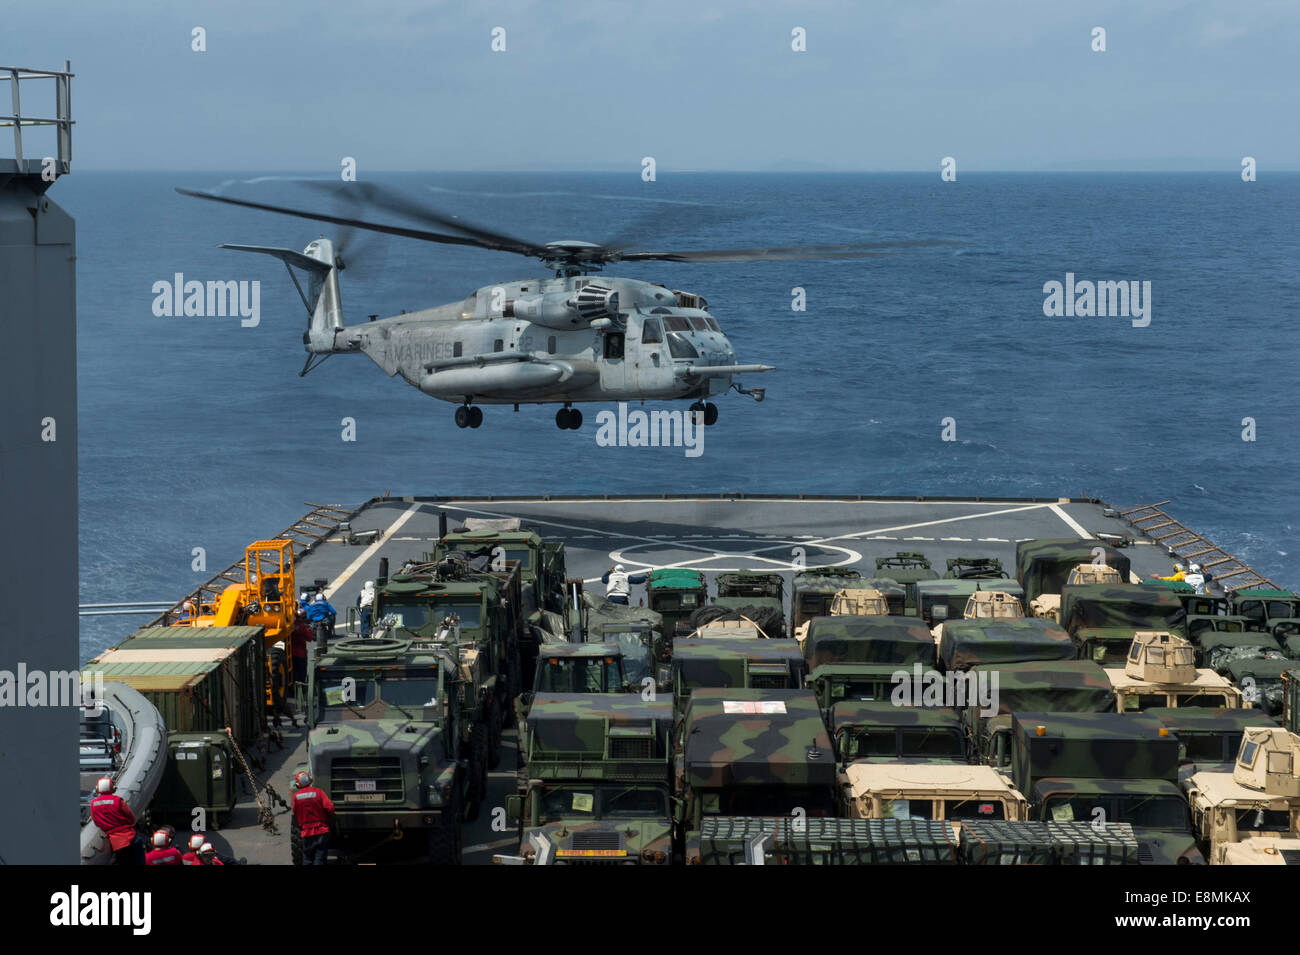 East China Sea, 18. März 2014 - bereitet ein CH-53E Super Stallion-Hubschrauber landen auf dem Flugdeck der Whidbey Insel-cl Stockfoto